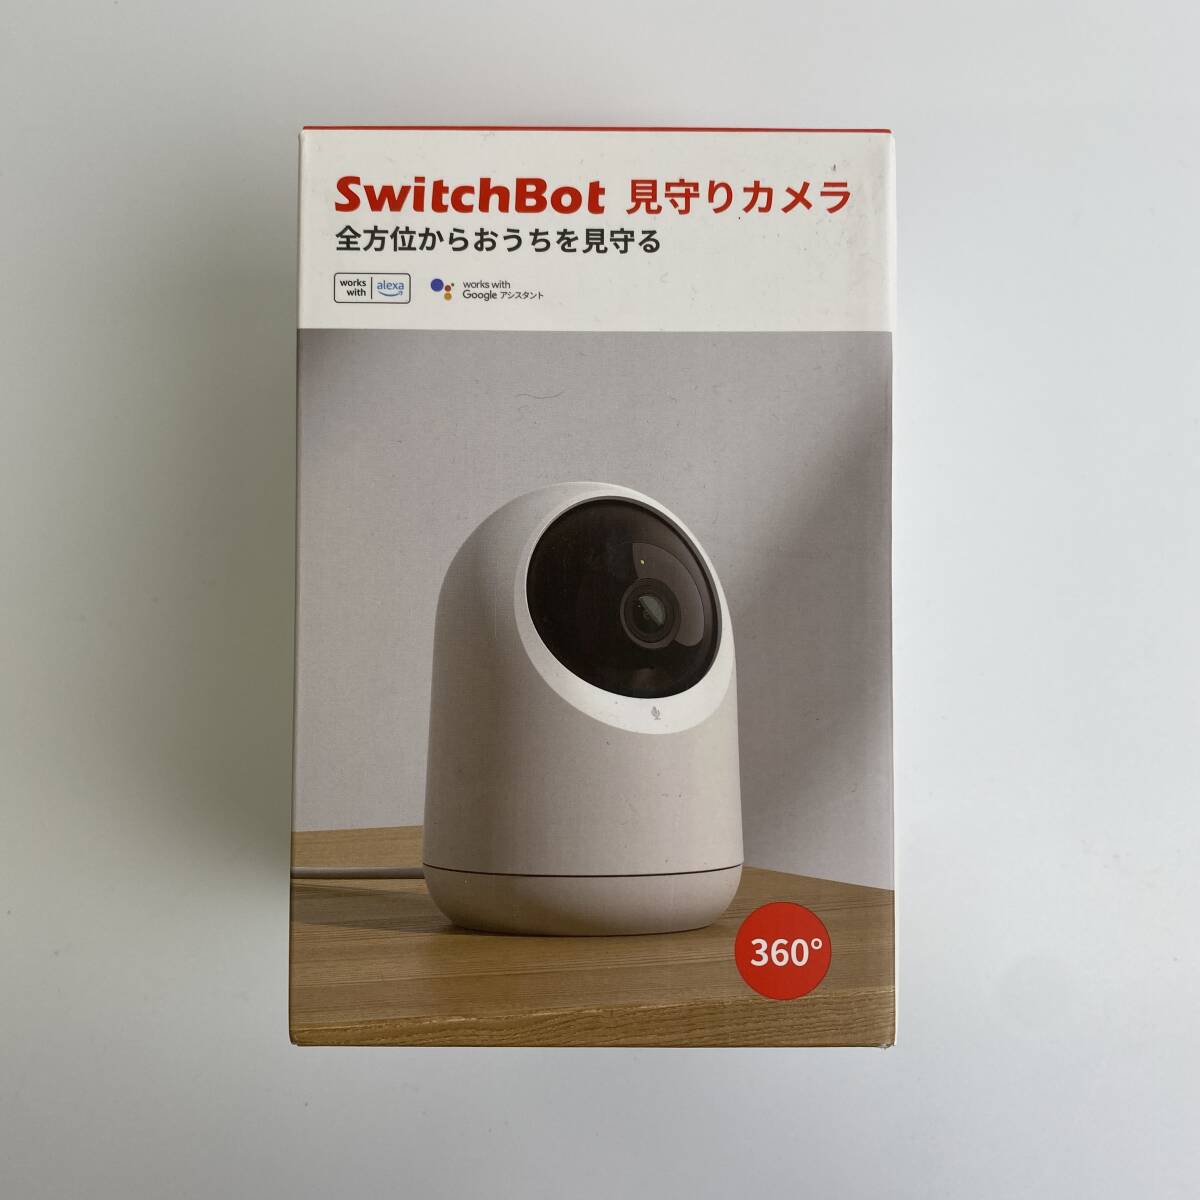 [1 иен аукцион ] переключатель boto(SwitchBot) камера системы безопасности Alexa закрытый камера сеть камера детский монитор TS01B001239